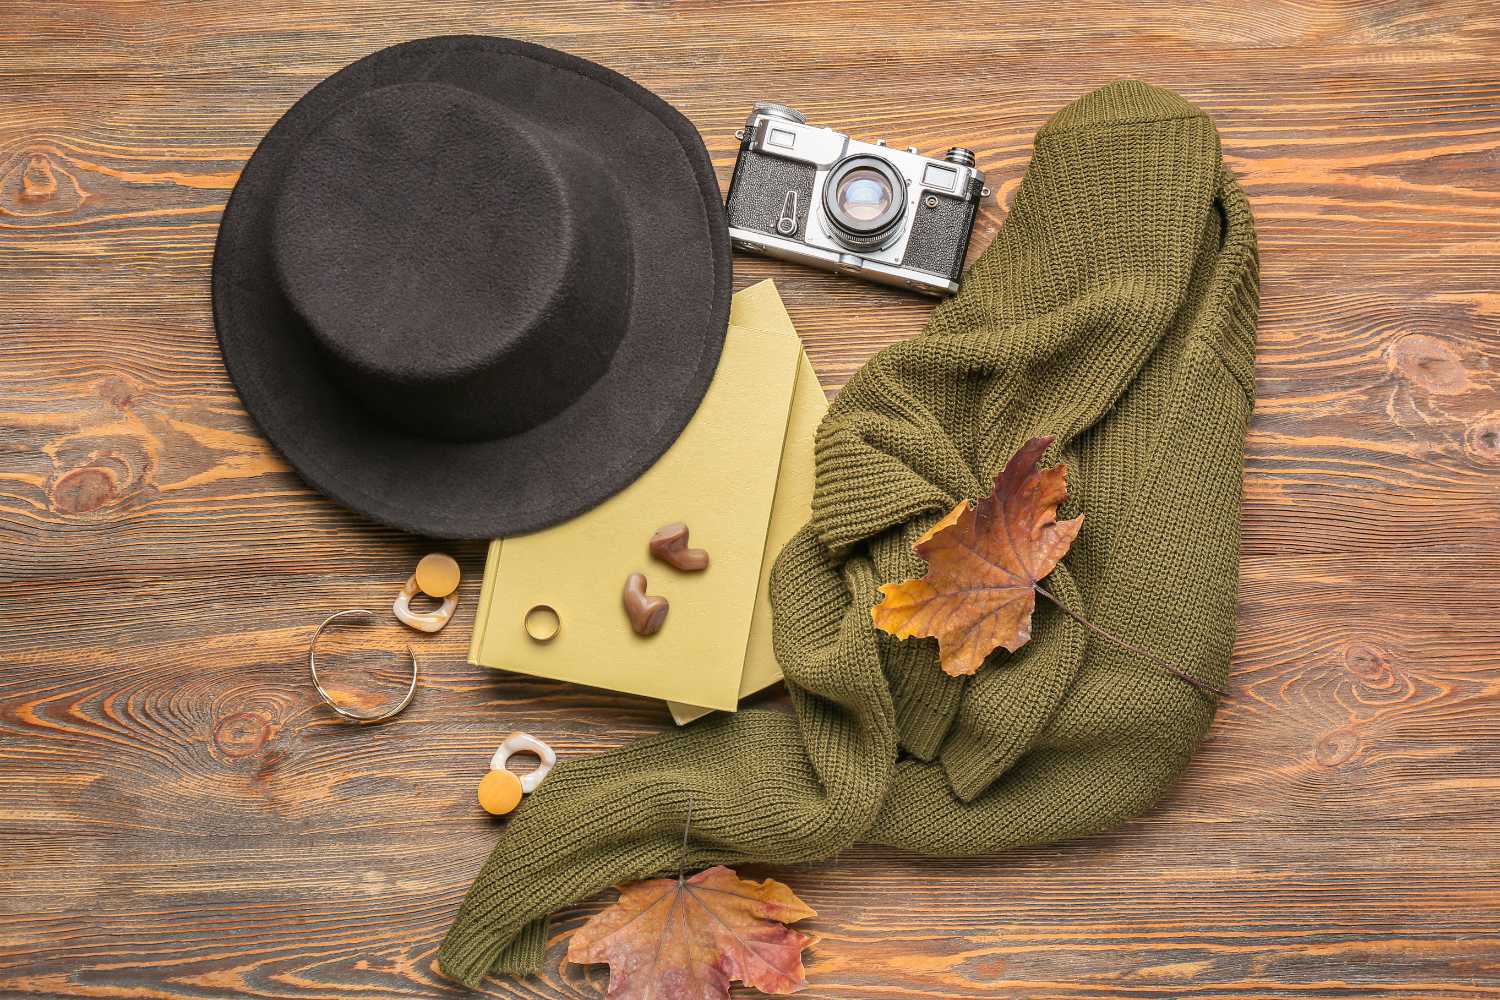 Auf einem Tisch mit Holzmaserung liegt ein Paar Hörgeräte auf einem gelben Brief samt Umschlag zwischen verschiedenen Gegenständen, wie einem olivgrünen Pullover, Herbstblättern, einem schwarzen Hut und einer antiken Kamera.